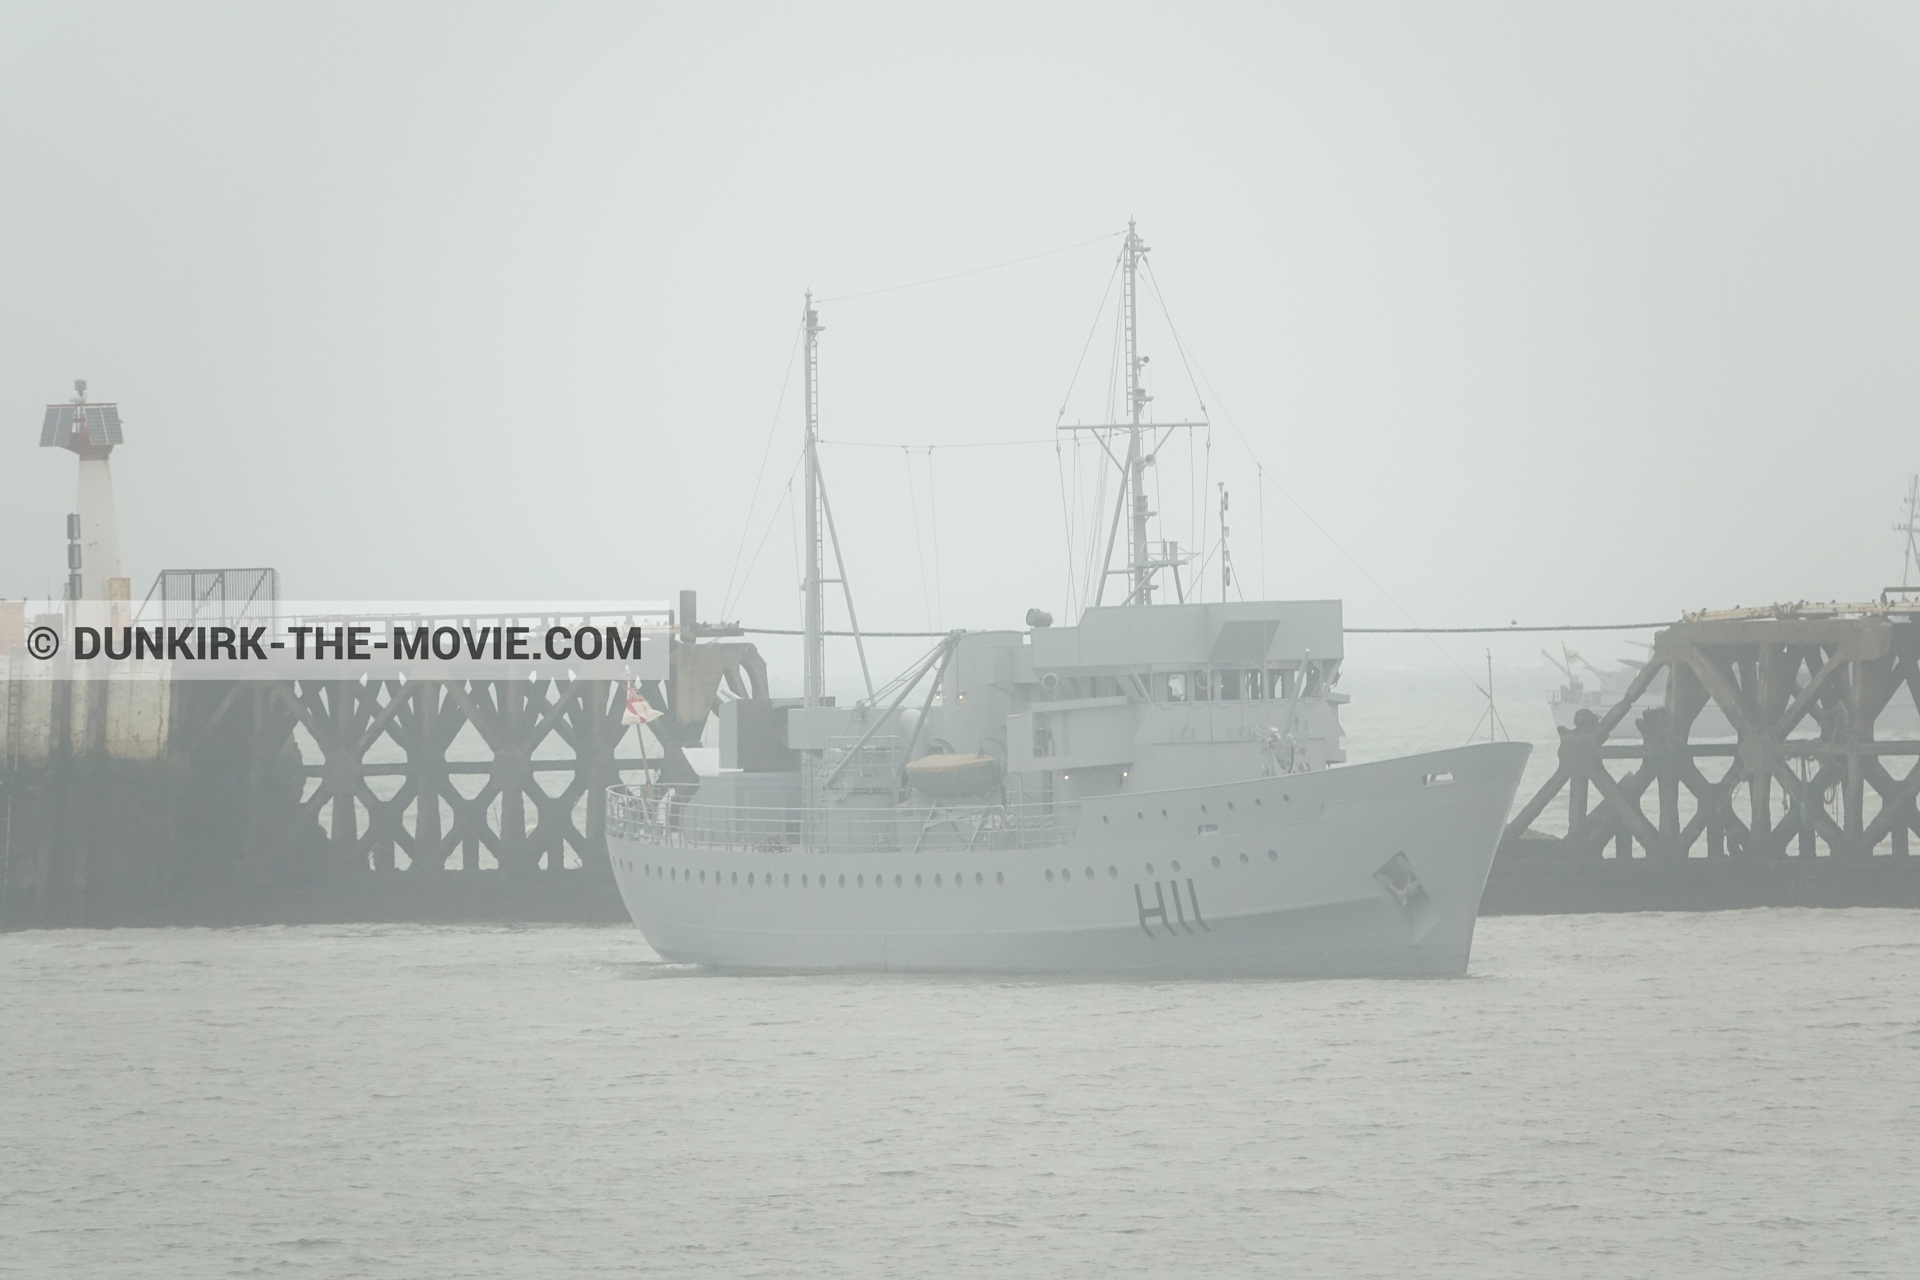 Fotos con cielo gris, H11 - MLV Castor,  durante el rodaje de la película Dunkerque de Nolan